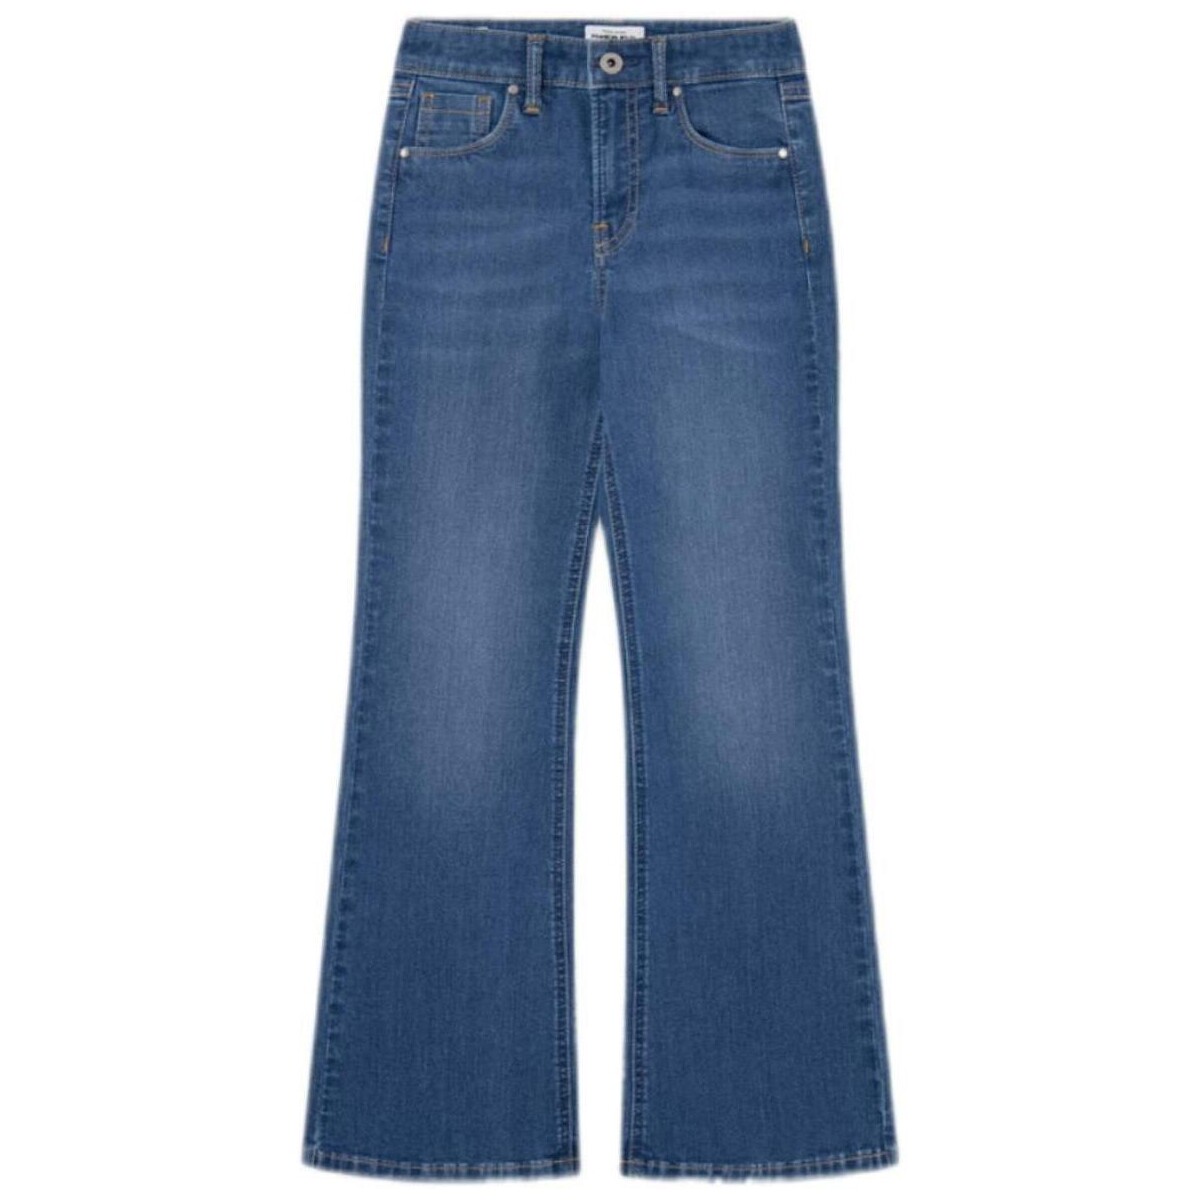 Textiel Meisjes Jeans Pepe jeans  Blauw